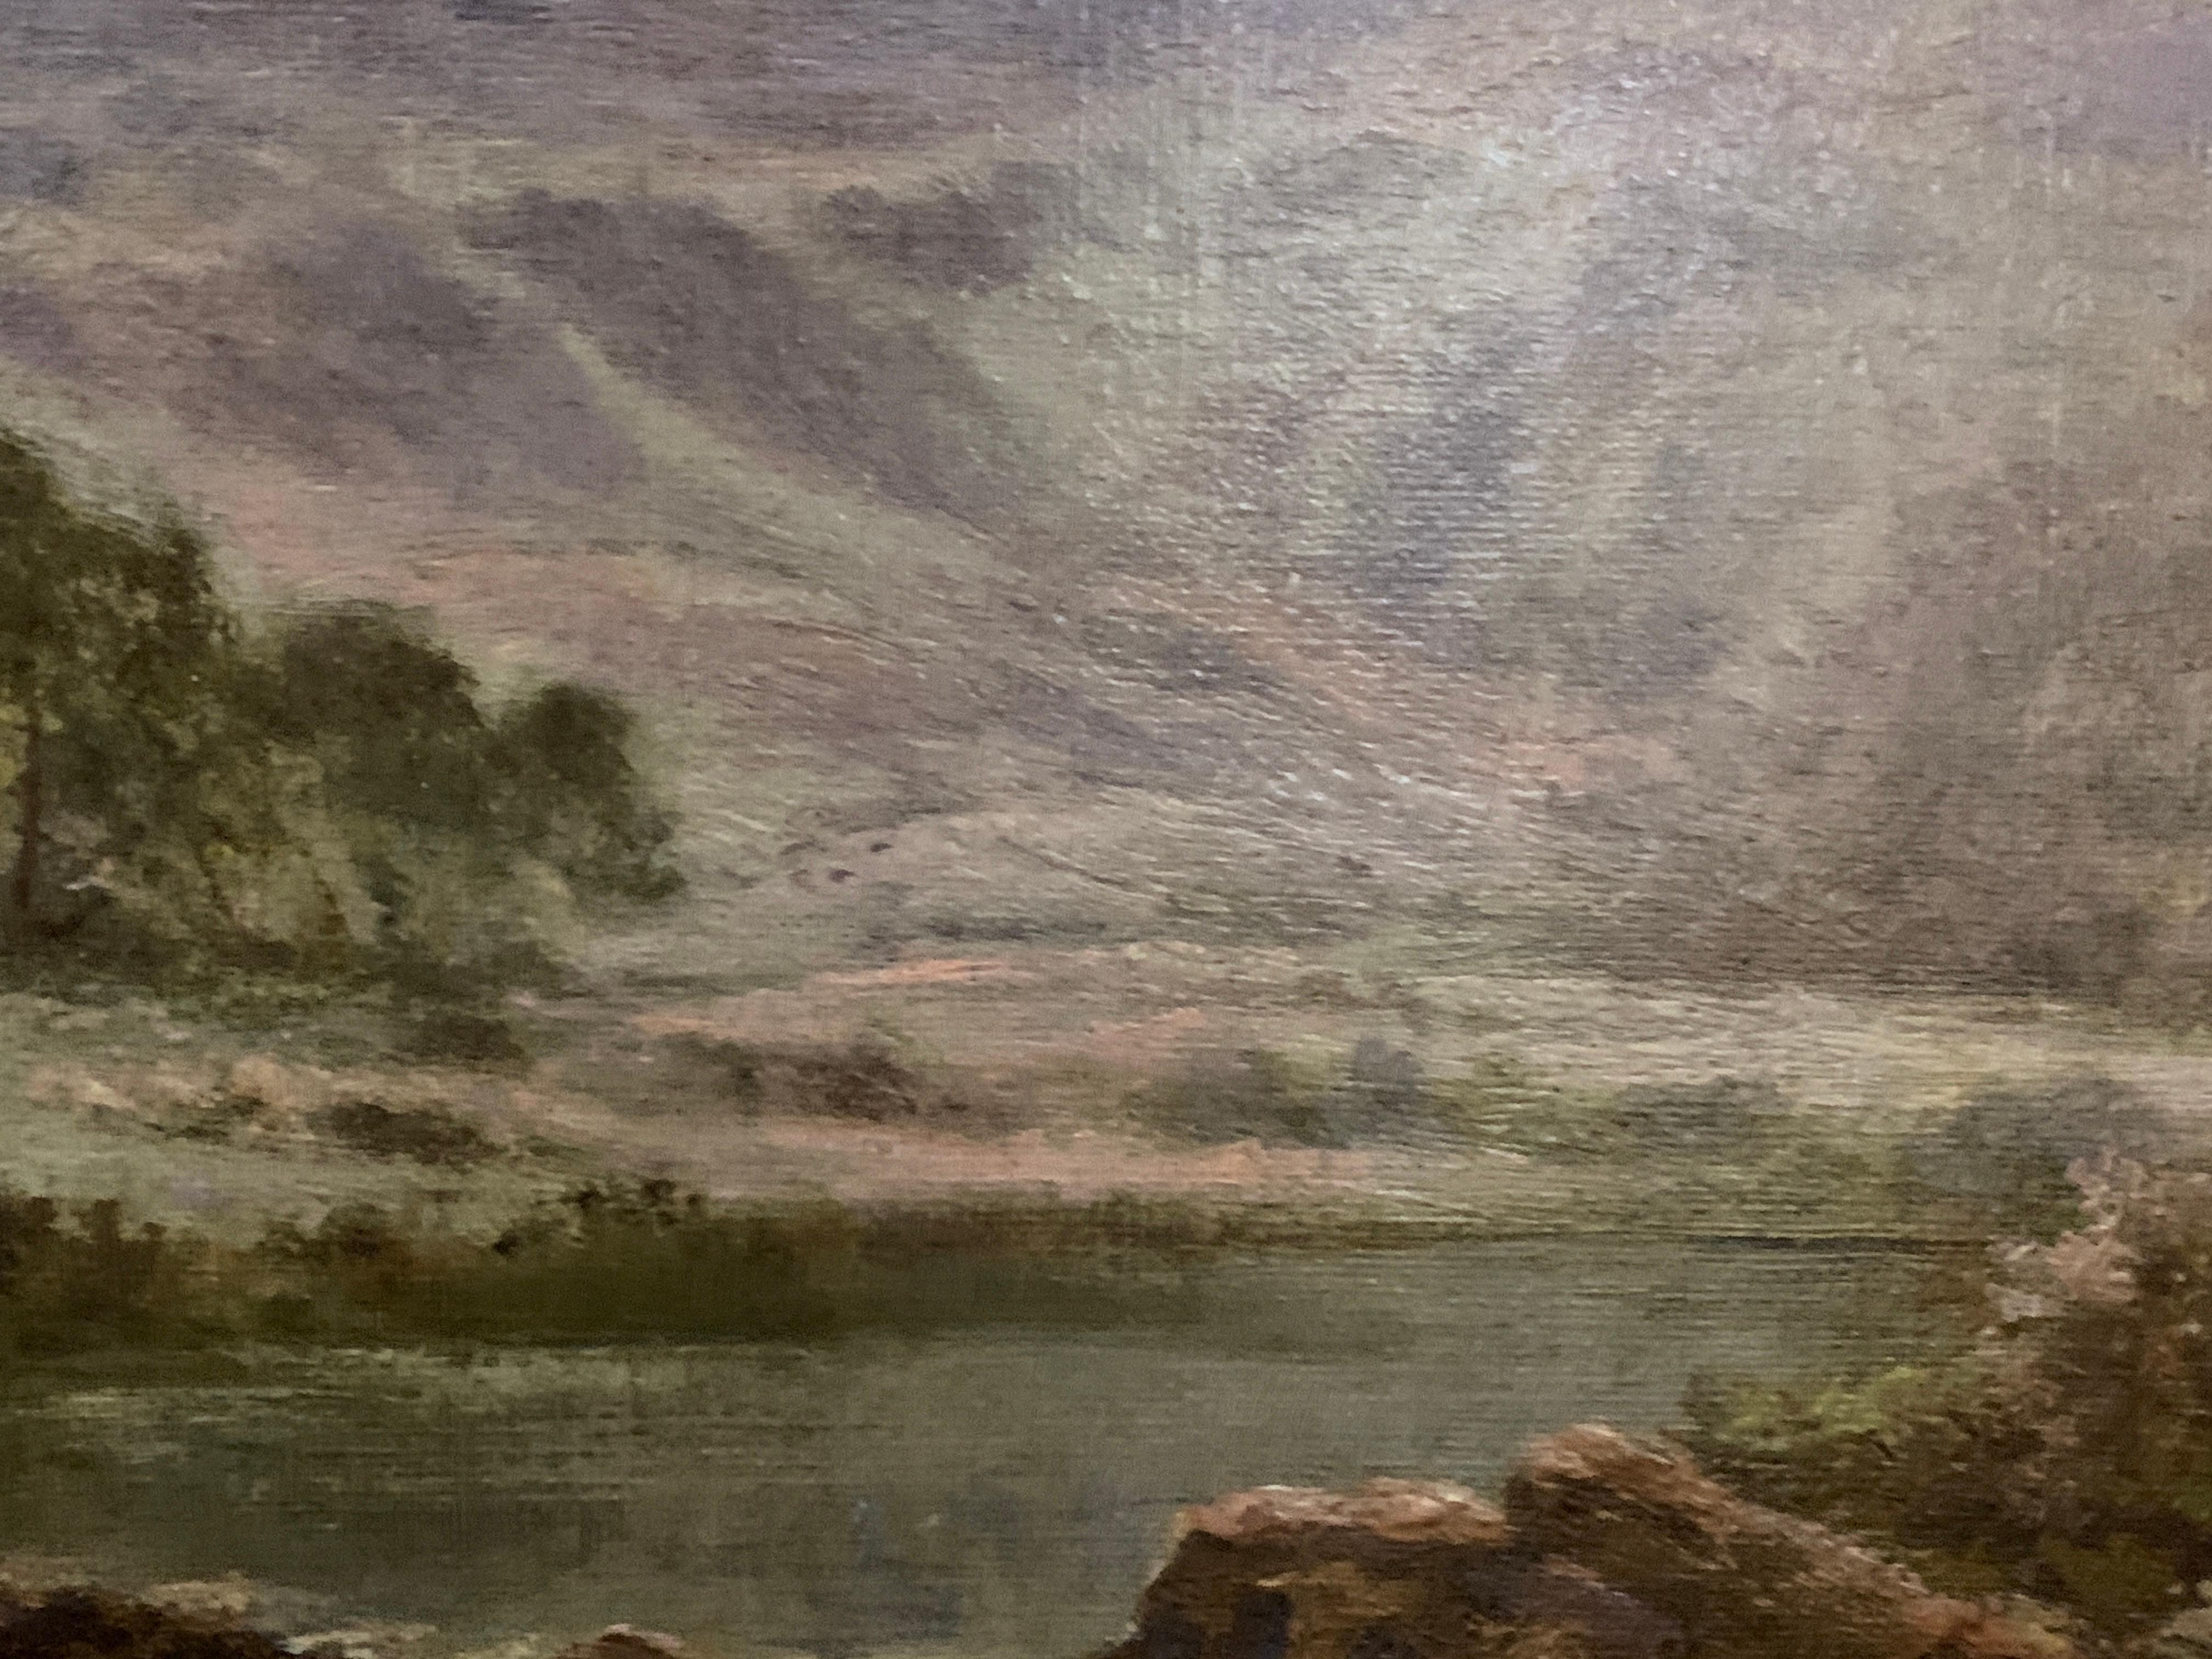 H. East war ein Ölmaler von Landschaften und ländlichen Szenen, der an der Wende vom 19. zum 20. Jahrhundert tätig war.
Er stellte seine Werke nicht in den üblichen Ausstellungsräumen aus, aber seine Gemälde waren sehr gefragt. 
Zu den Themen seiner